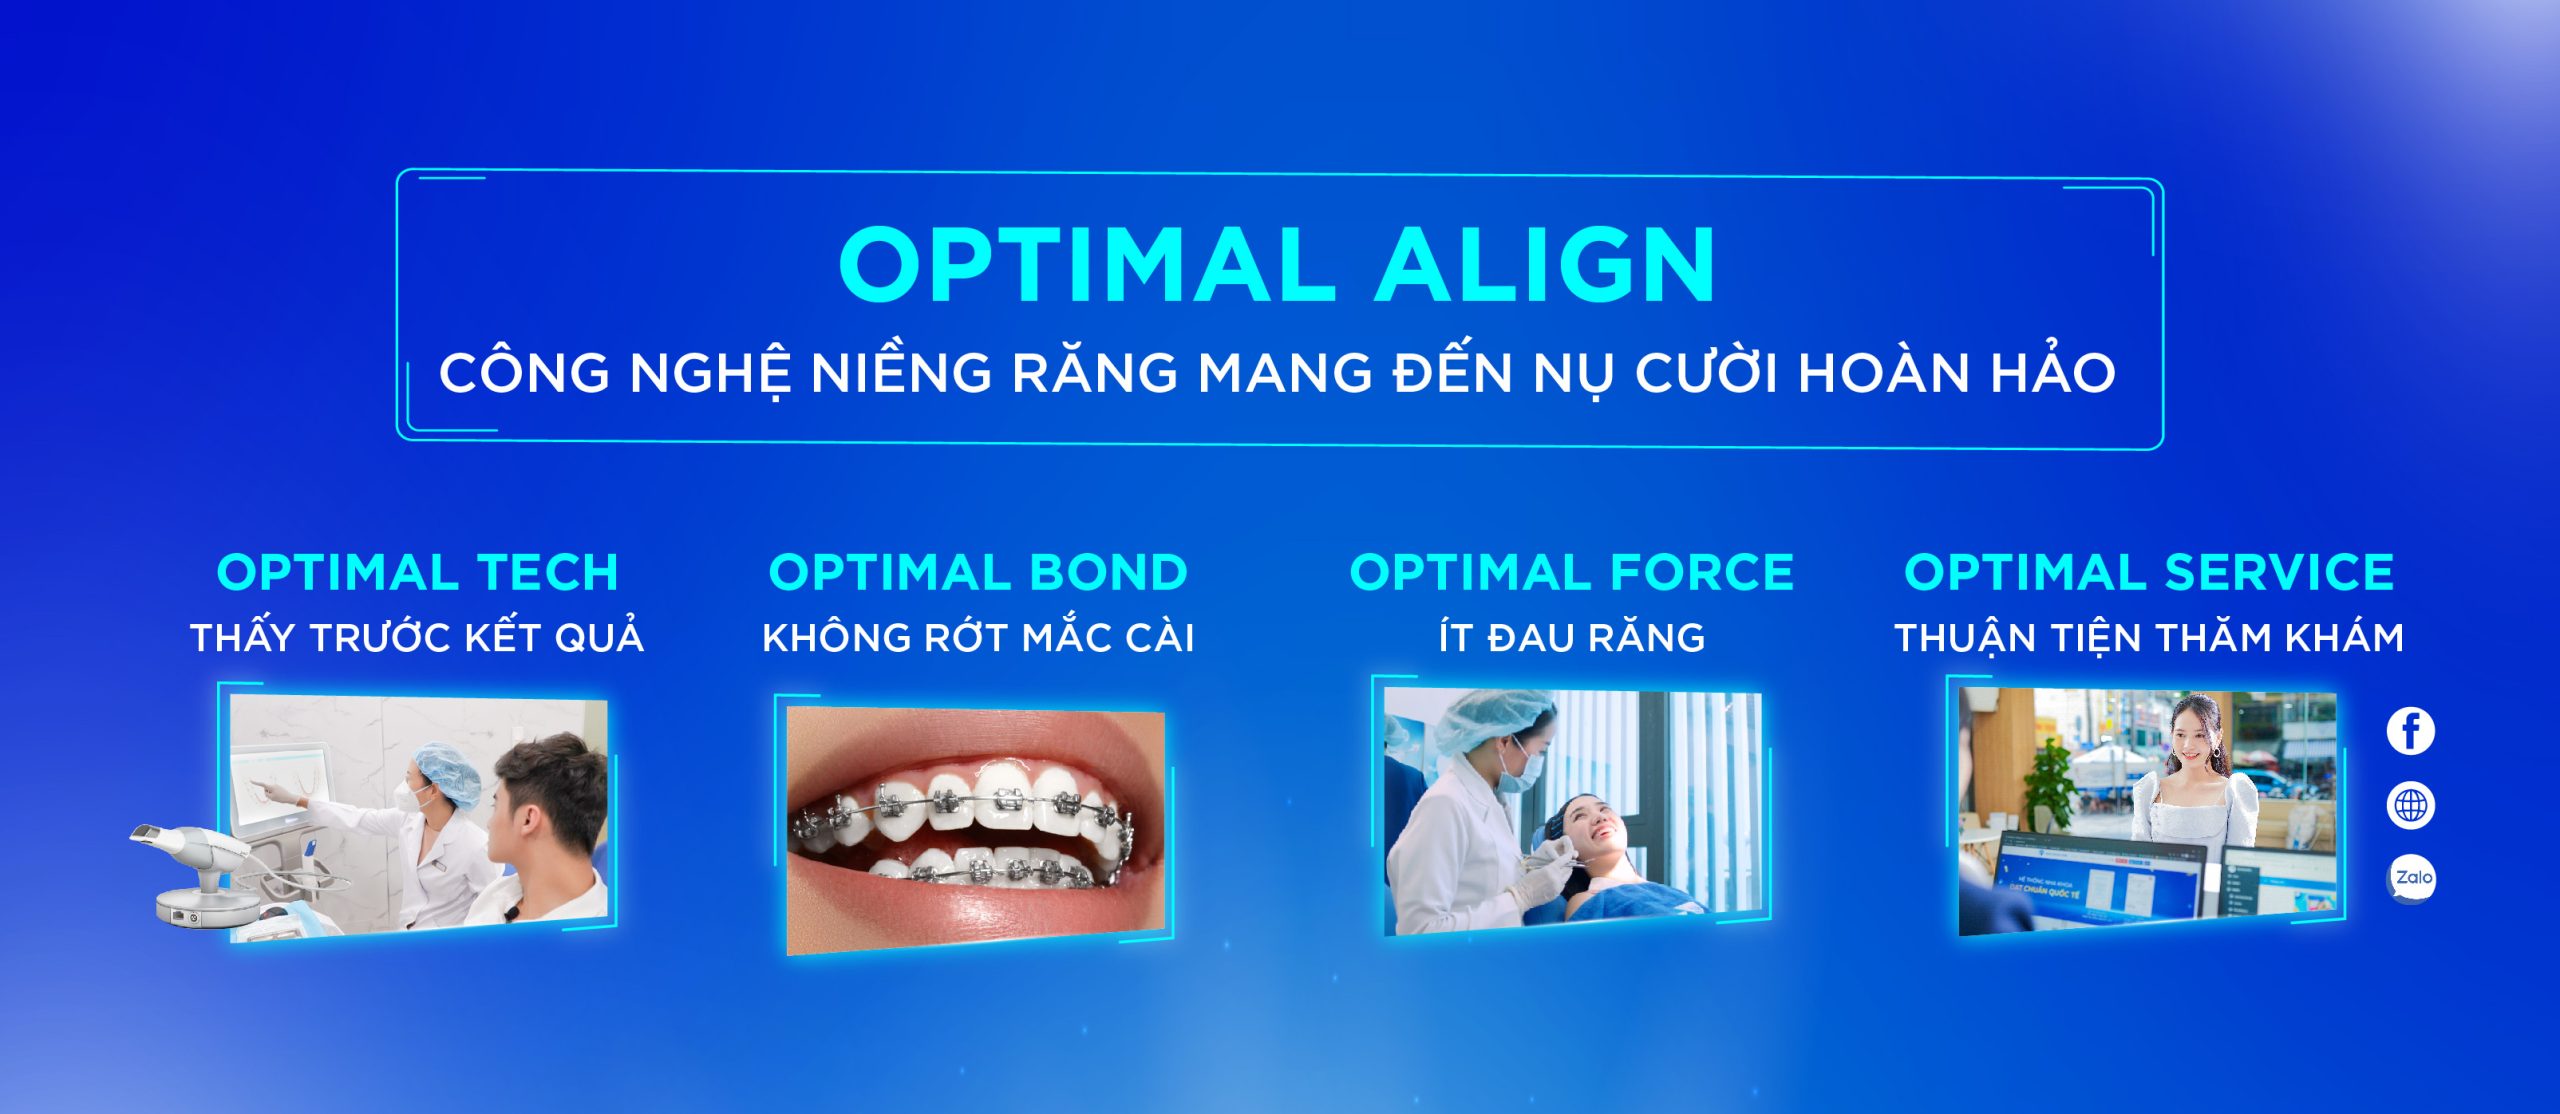 [Top Banner Mobile] Cách khắc phục răng cửa bị thưa hiệu quả